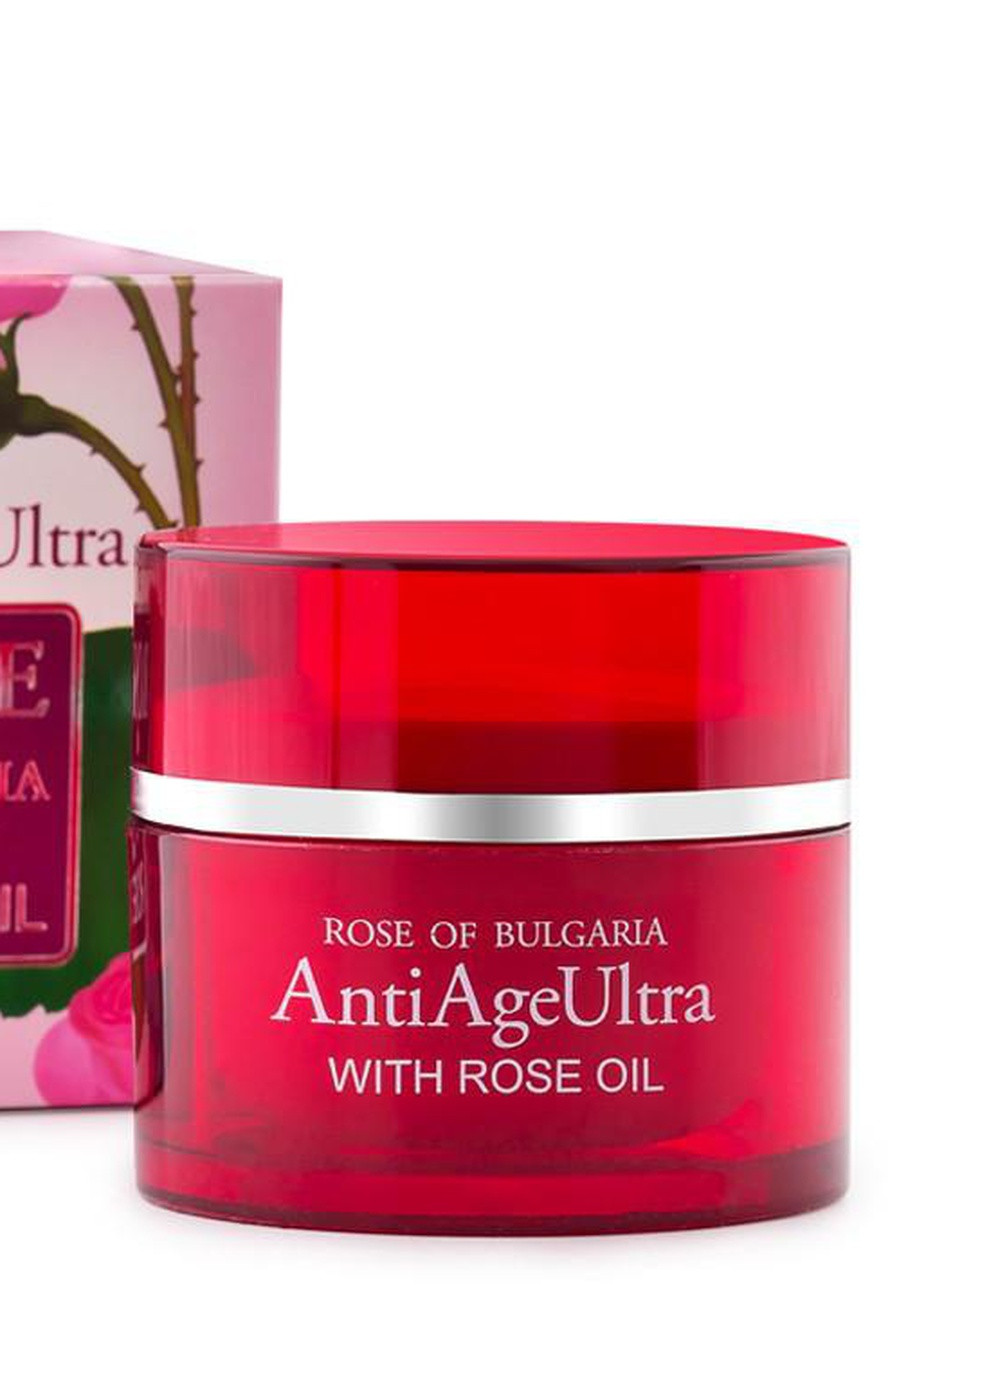 Ультраантивозрастной крем для лица с розовм маслом Anti Age Ultra Rose of Bulgaria от 50 мл Biofresh (253774345)